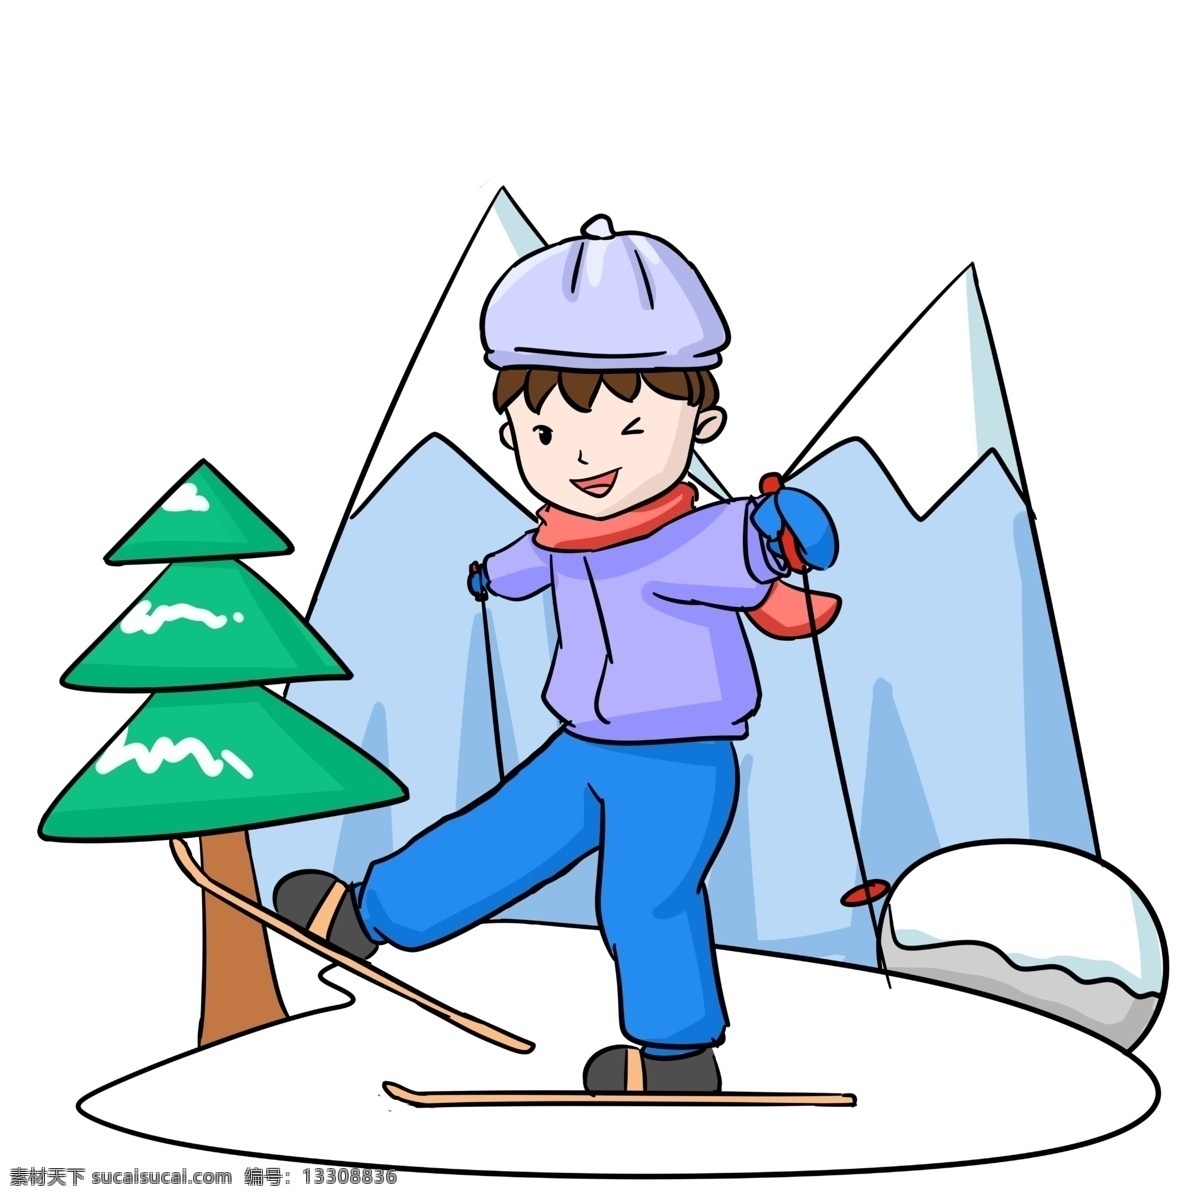 冬季 旅游 男孩 滑雪 卡通 雪山 松树 绿色 植物 滑雪板 滑雪运动 冬天 冬季旅行 卡通人物 手绘图 雪峰